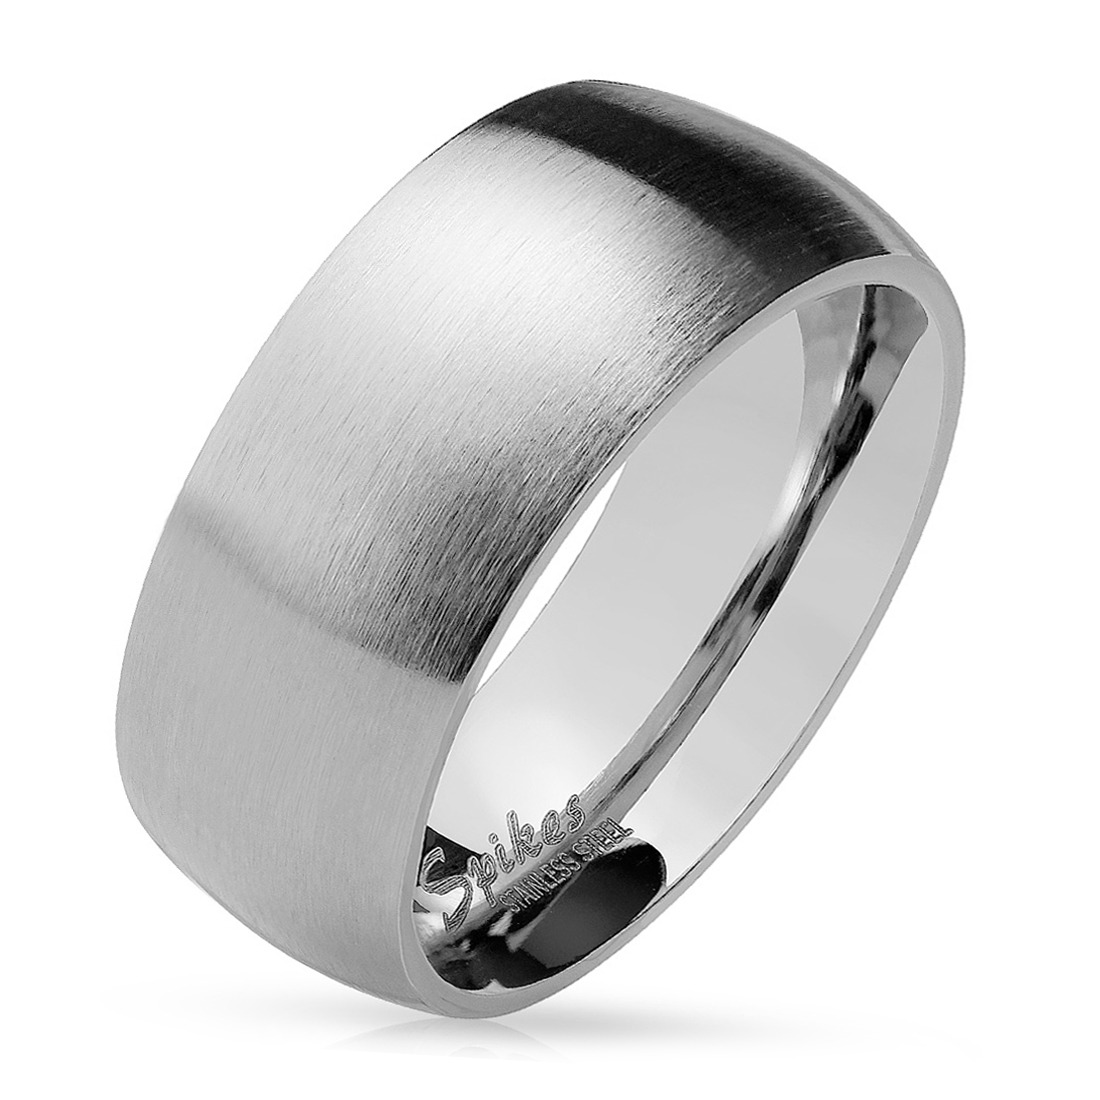 Šperky4U OPR0028 Ocelový prsten matný, šíře 8 mm - velikost 70 - OPR0028-8-70